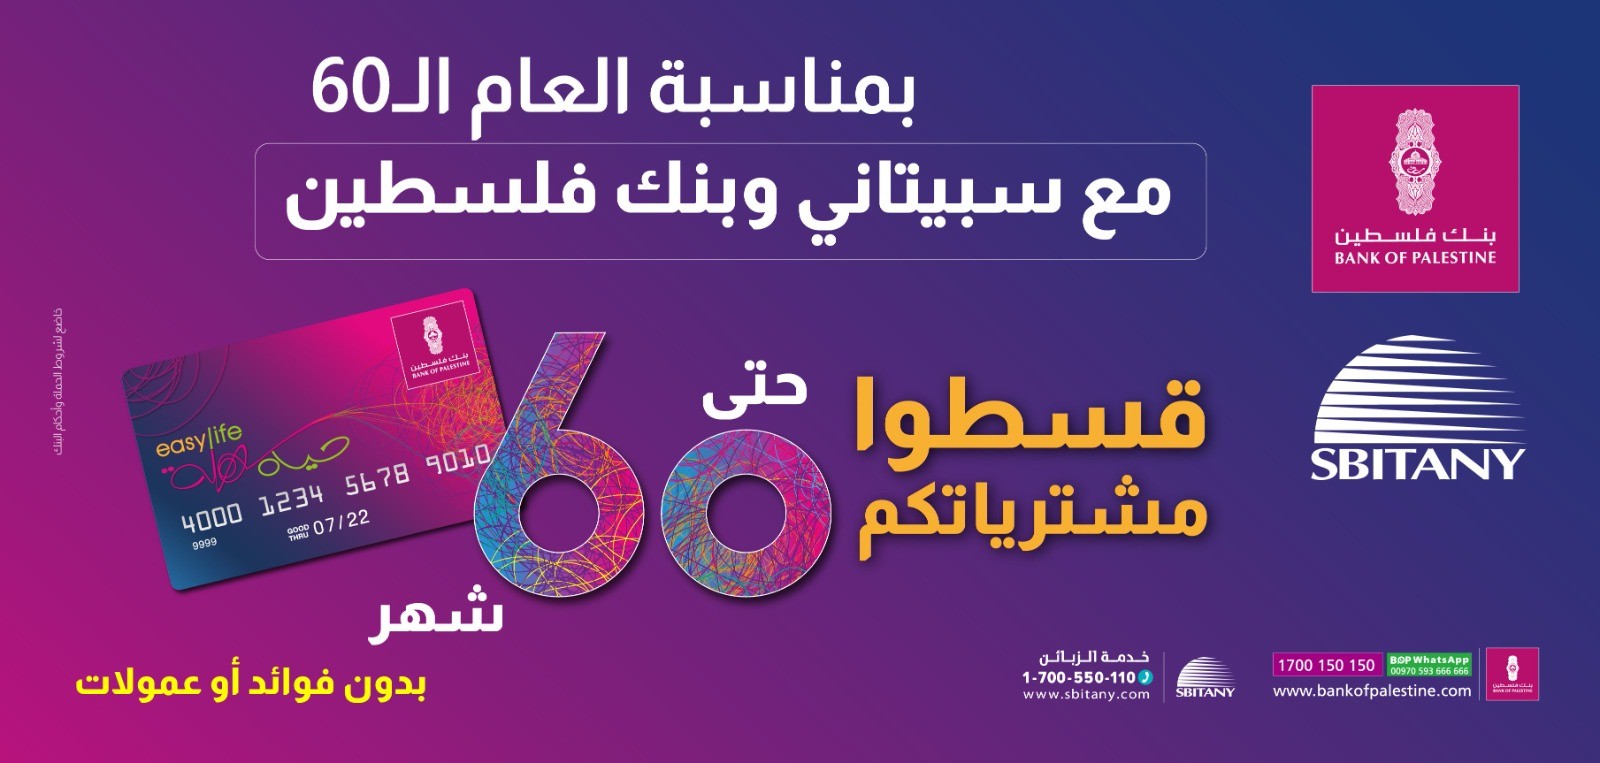 بنك فلسطين وسبيتاني يُطلقان حملة التقسيط حتى 60 شهراً لمستخدمي بطاقة 